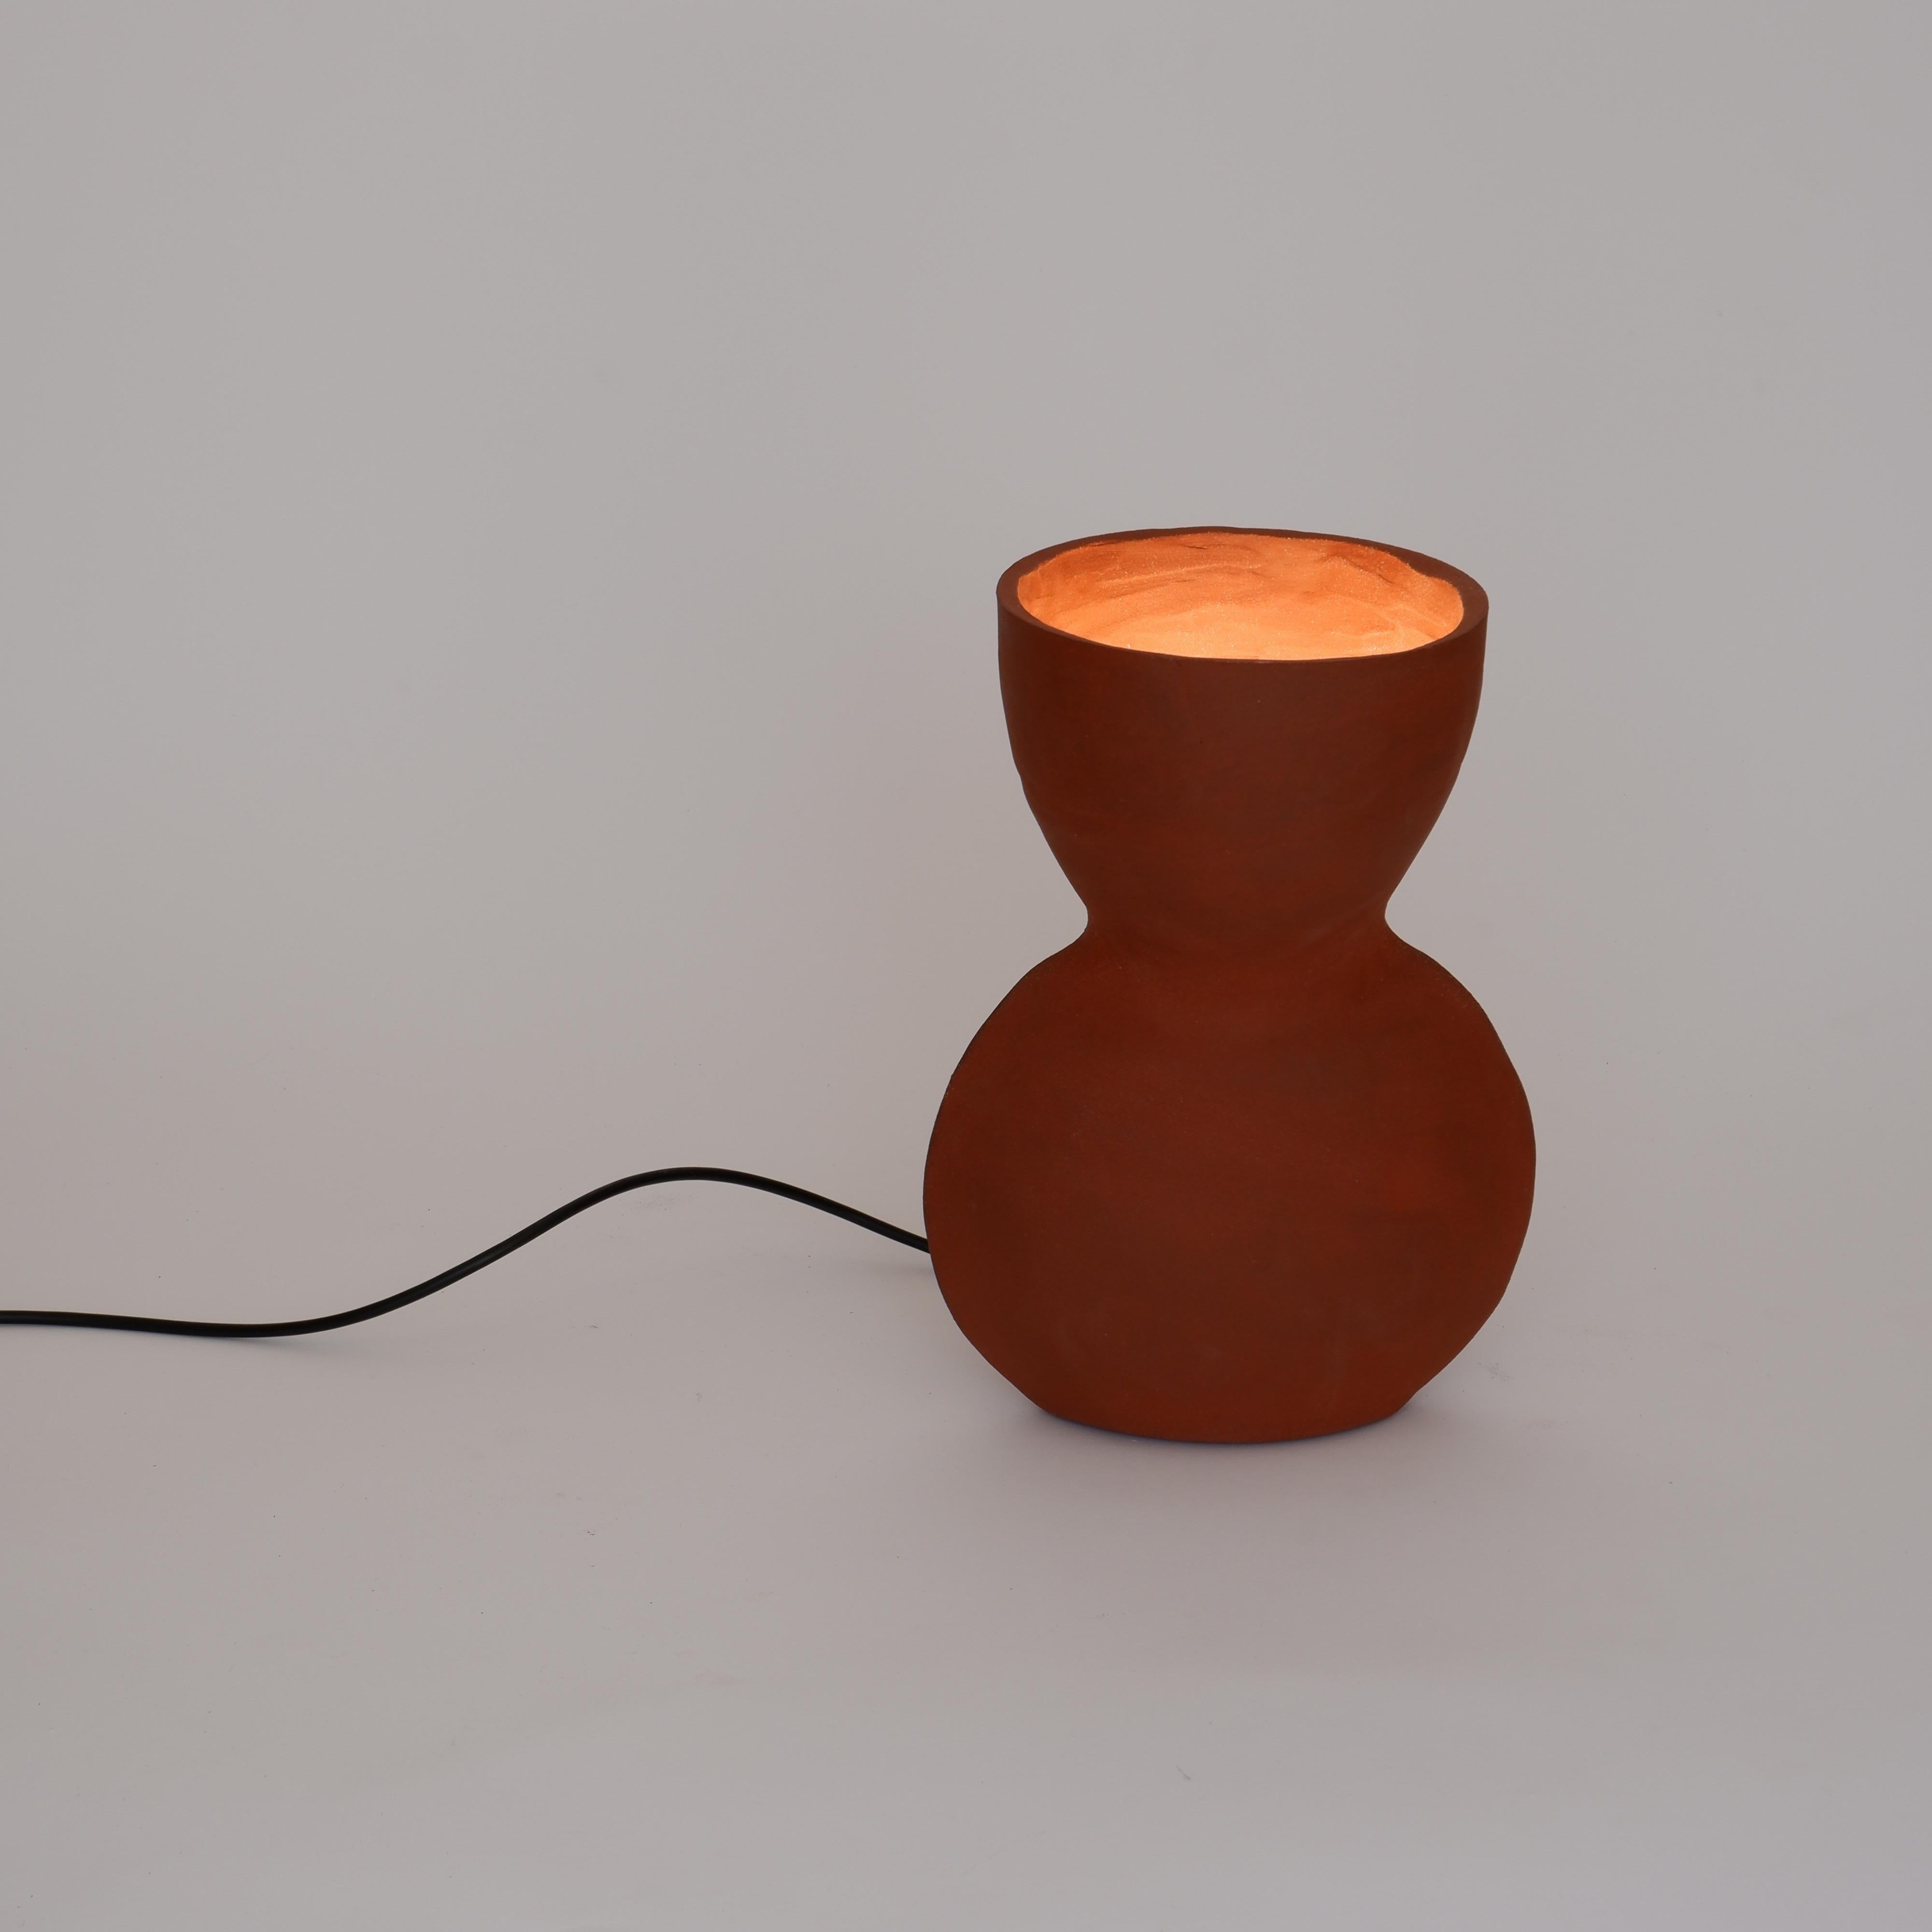 Unira Bigli Rote Lampe von Ia Kutateladze
Einzigartig.
Abmessungen: T 17 x B 23 x H 32 cm.
MATERIALIEN: Lehm.

Jedes Stück ist ein Unikat, da es in freier Handarbeit hergestellt wird. Verschiedene Farbvarianten erhältlich: roher schwarzer Ton, roher